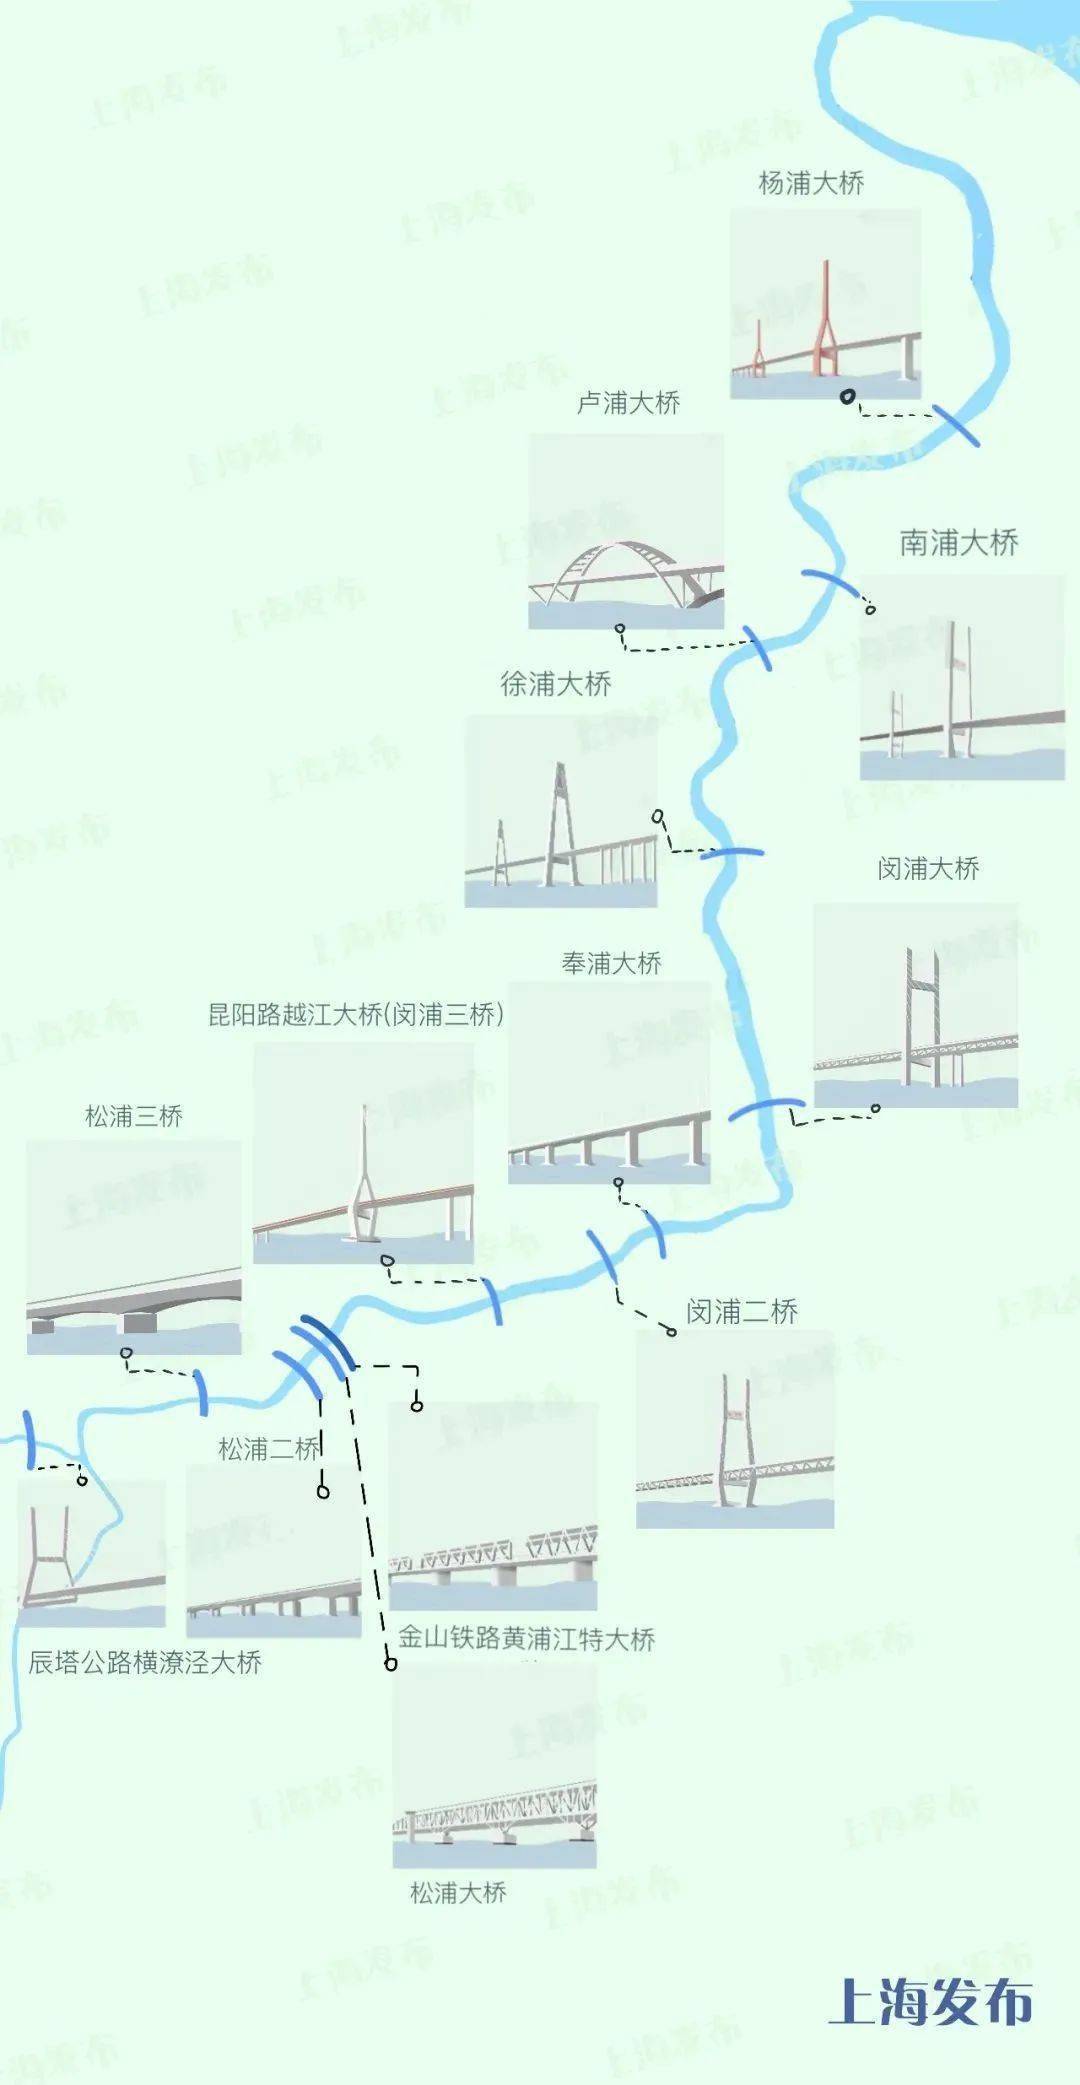 飞跃黄浦江缓解交通压力上海这13座大桥都有哪些亮点